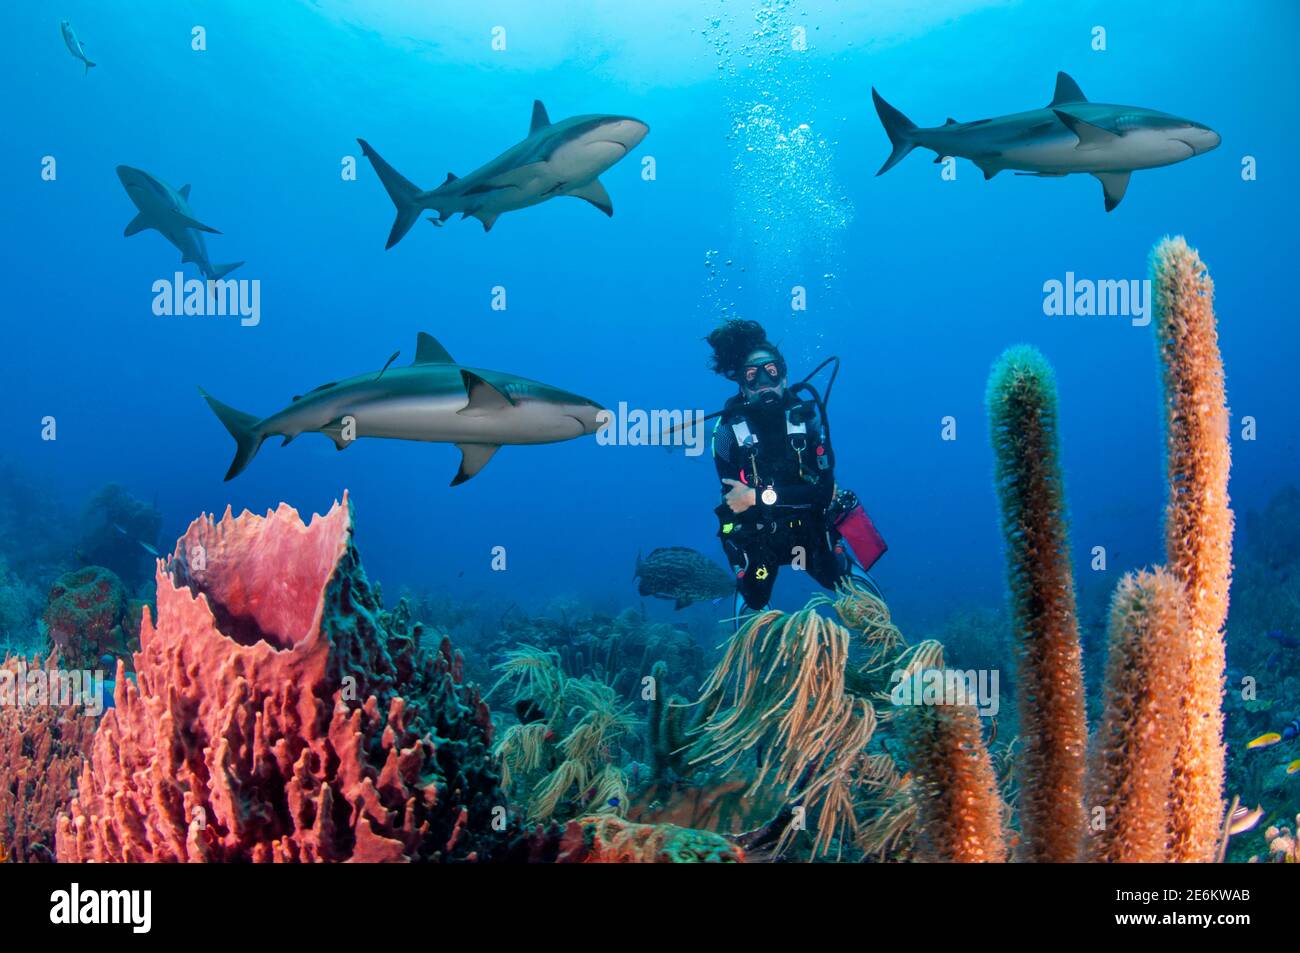 Buceador nadando con tiburón de arrecife caribeño (Carcharhinus perezi) sobre una esponja gigante de cañón (Xestospongia muta), buceando en el Banco Cordelia, ro Foto de stock